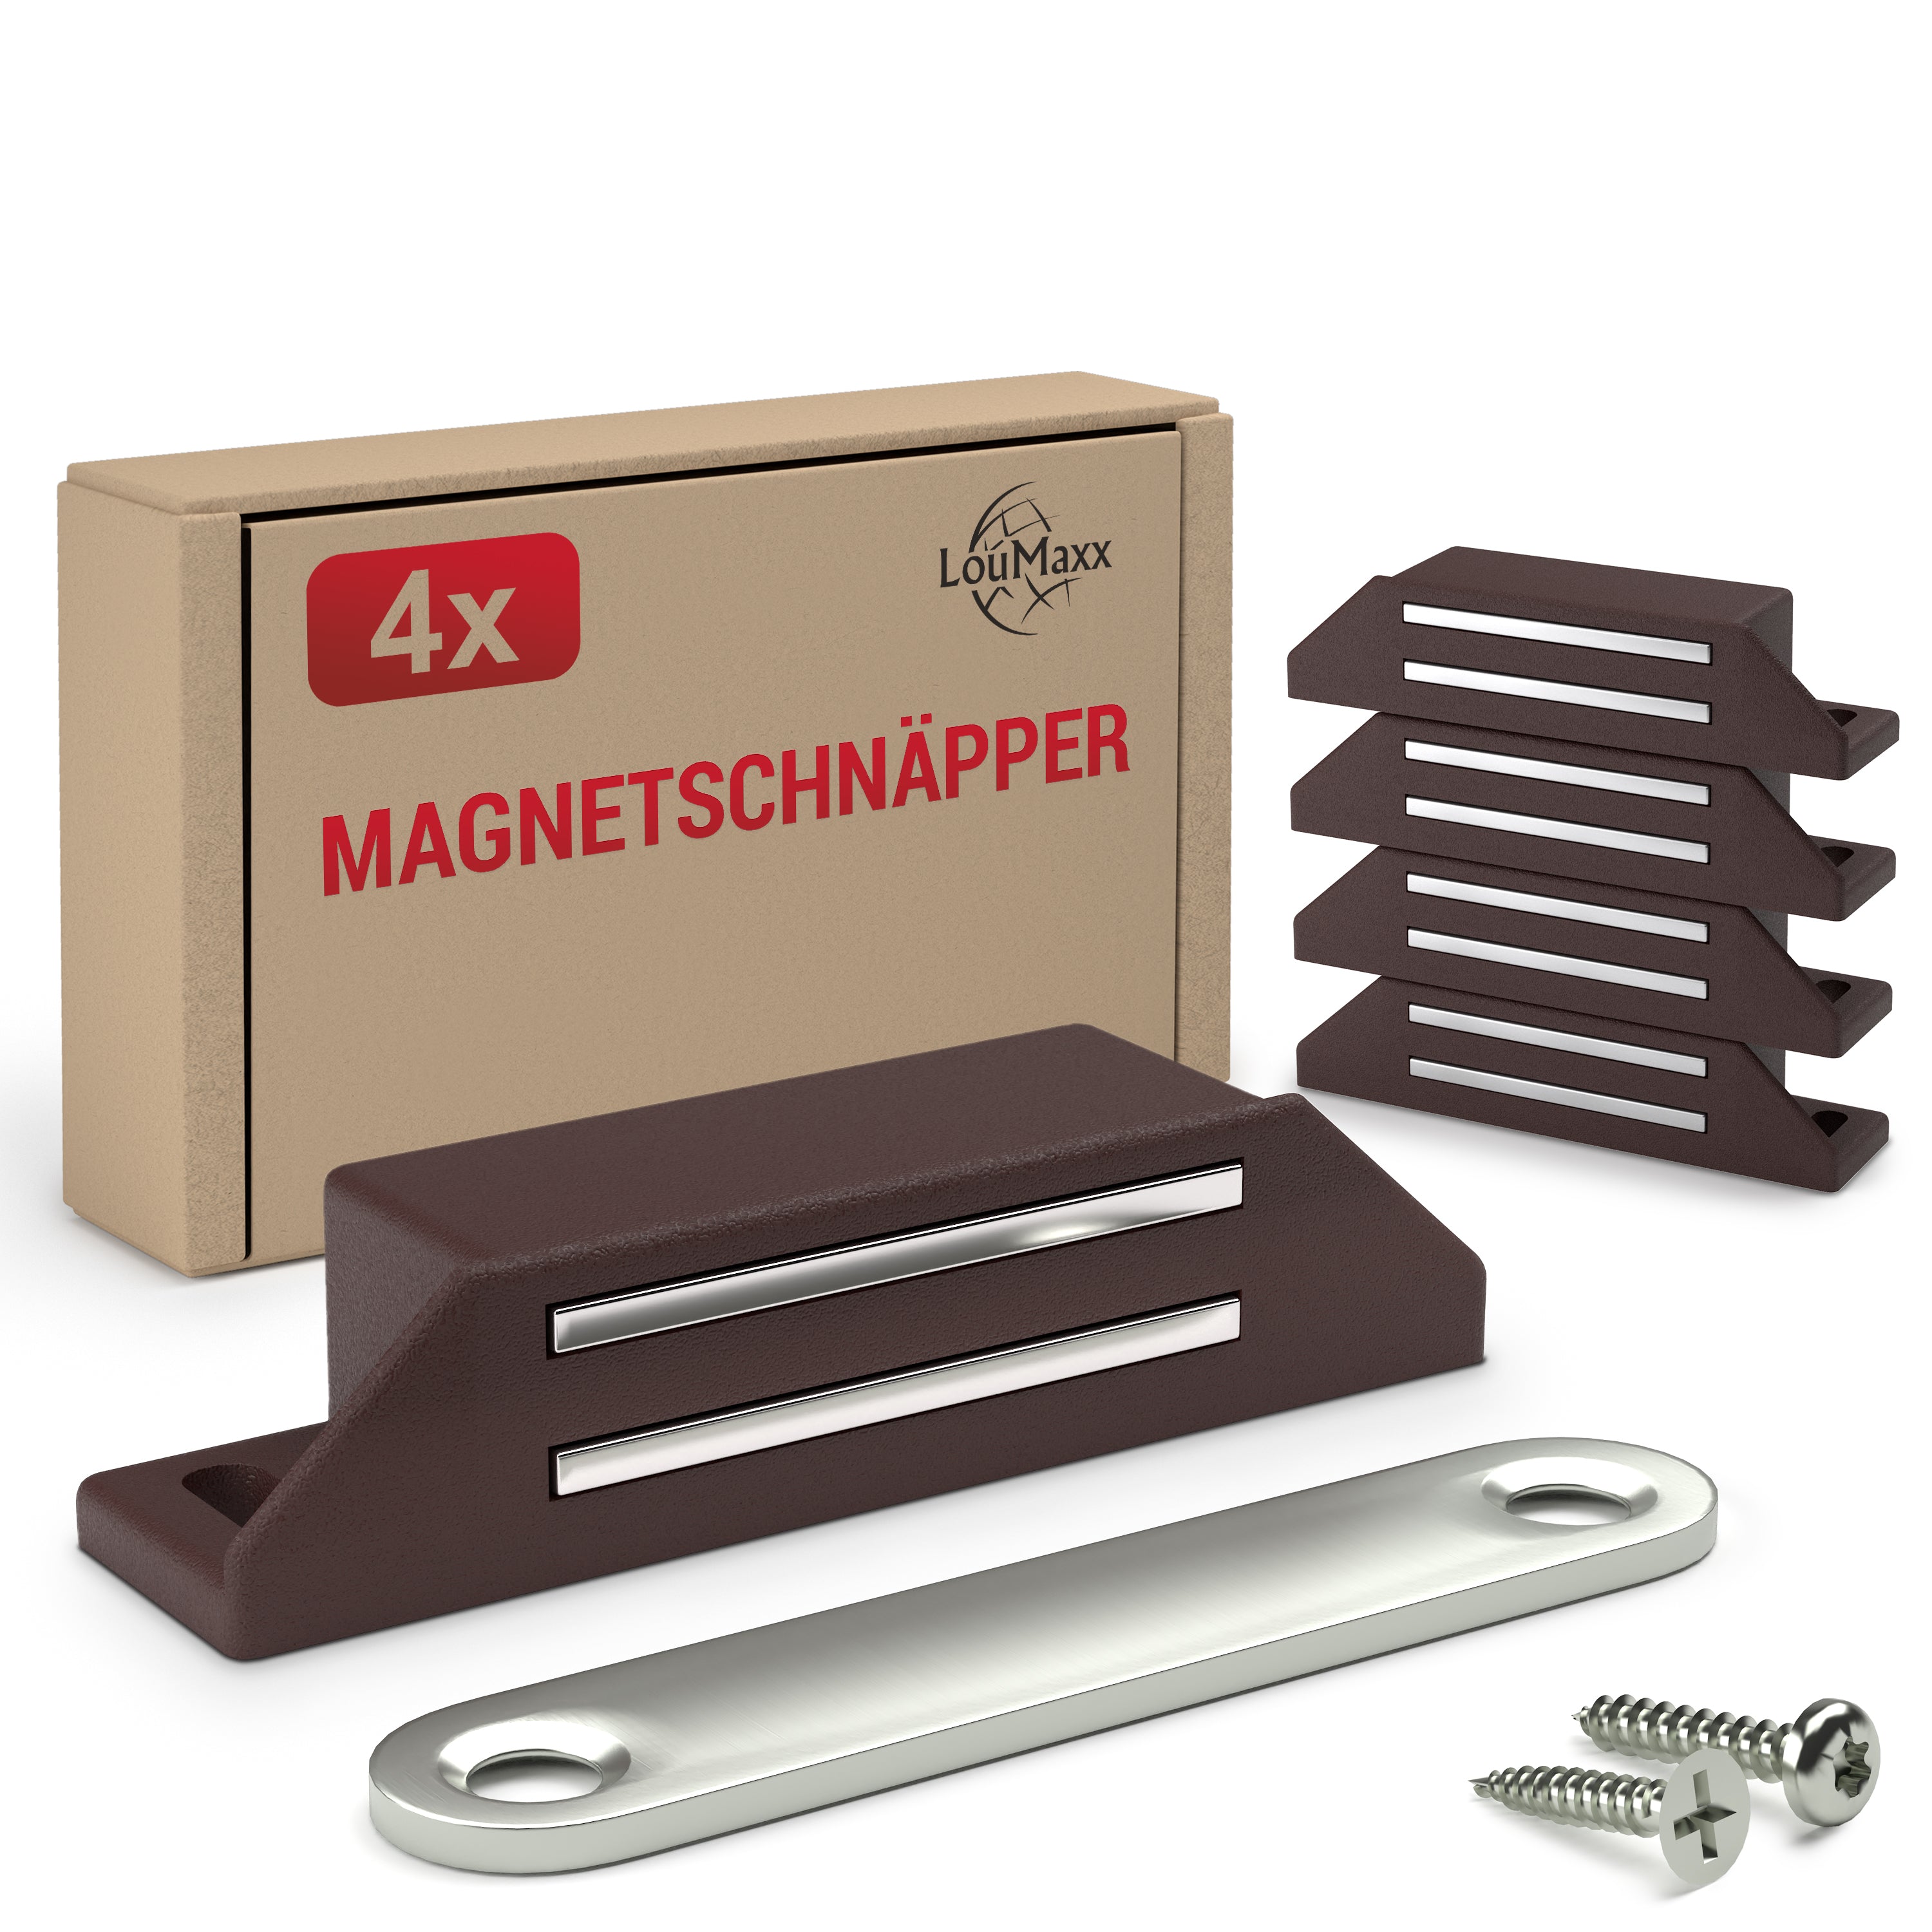 LouMaxx Magnetschnäpper sehr stark - Haltekraft 8kg - 4er Set in braun – Türmagnet - Magnetverschluss - Tür Magnet - Magnetverschluss Schrank